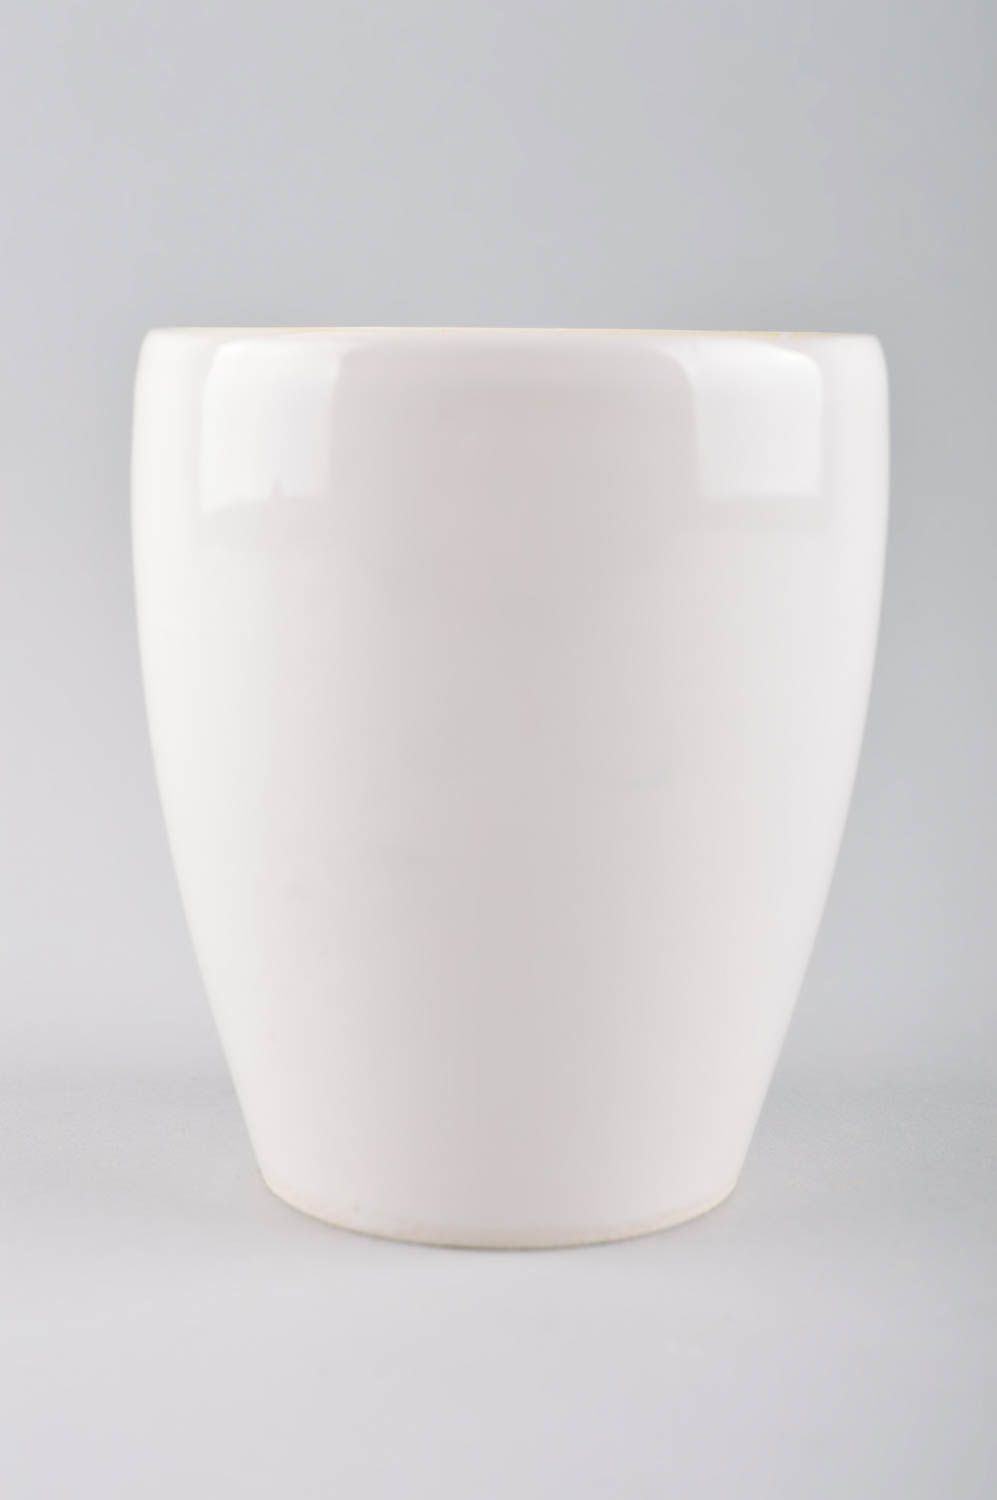 Handmade schöne Teetasse Keramik Tasse buntes Designer Geschirr originell schön foto 2